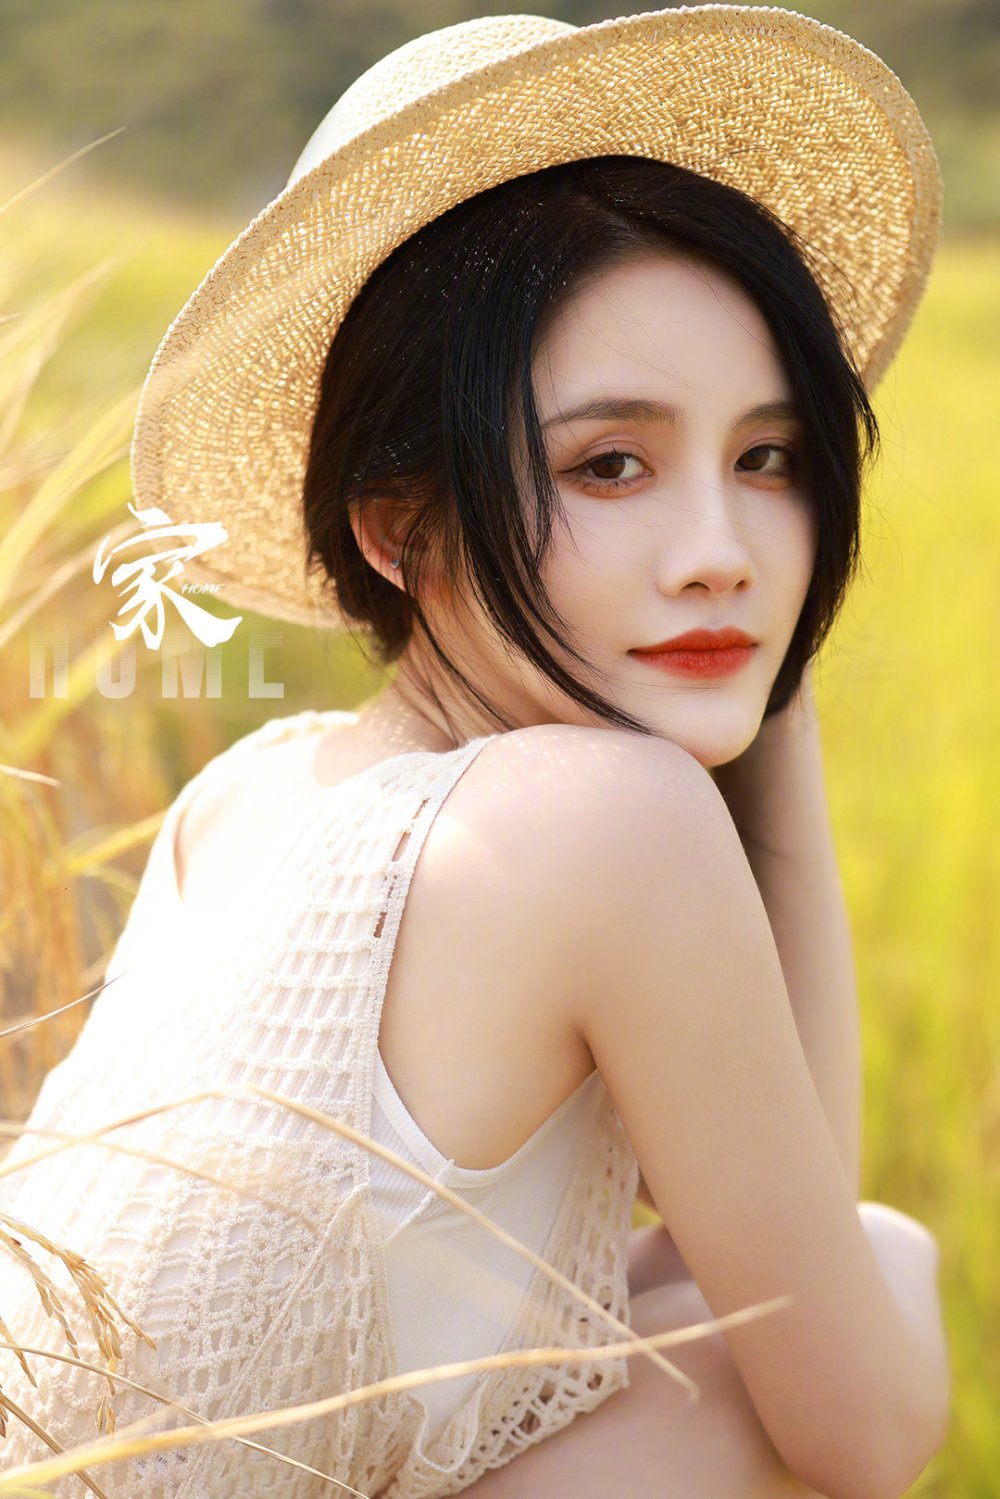 刘倩倩 Sexy and Hottest Photos , Latest Pics